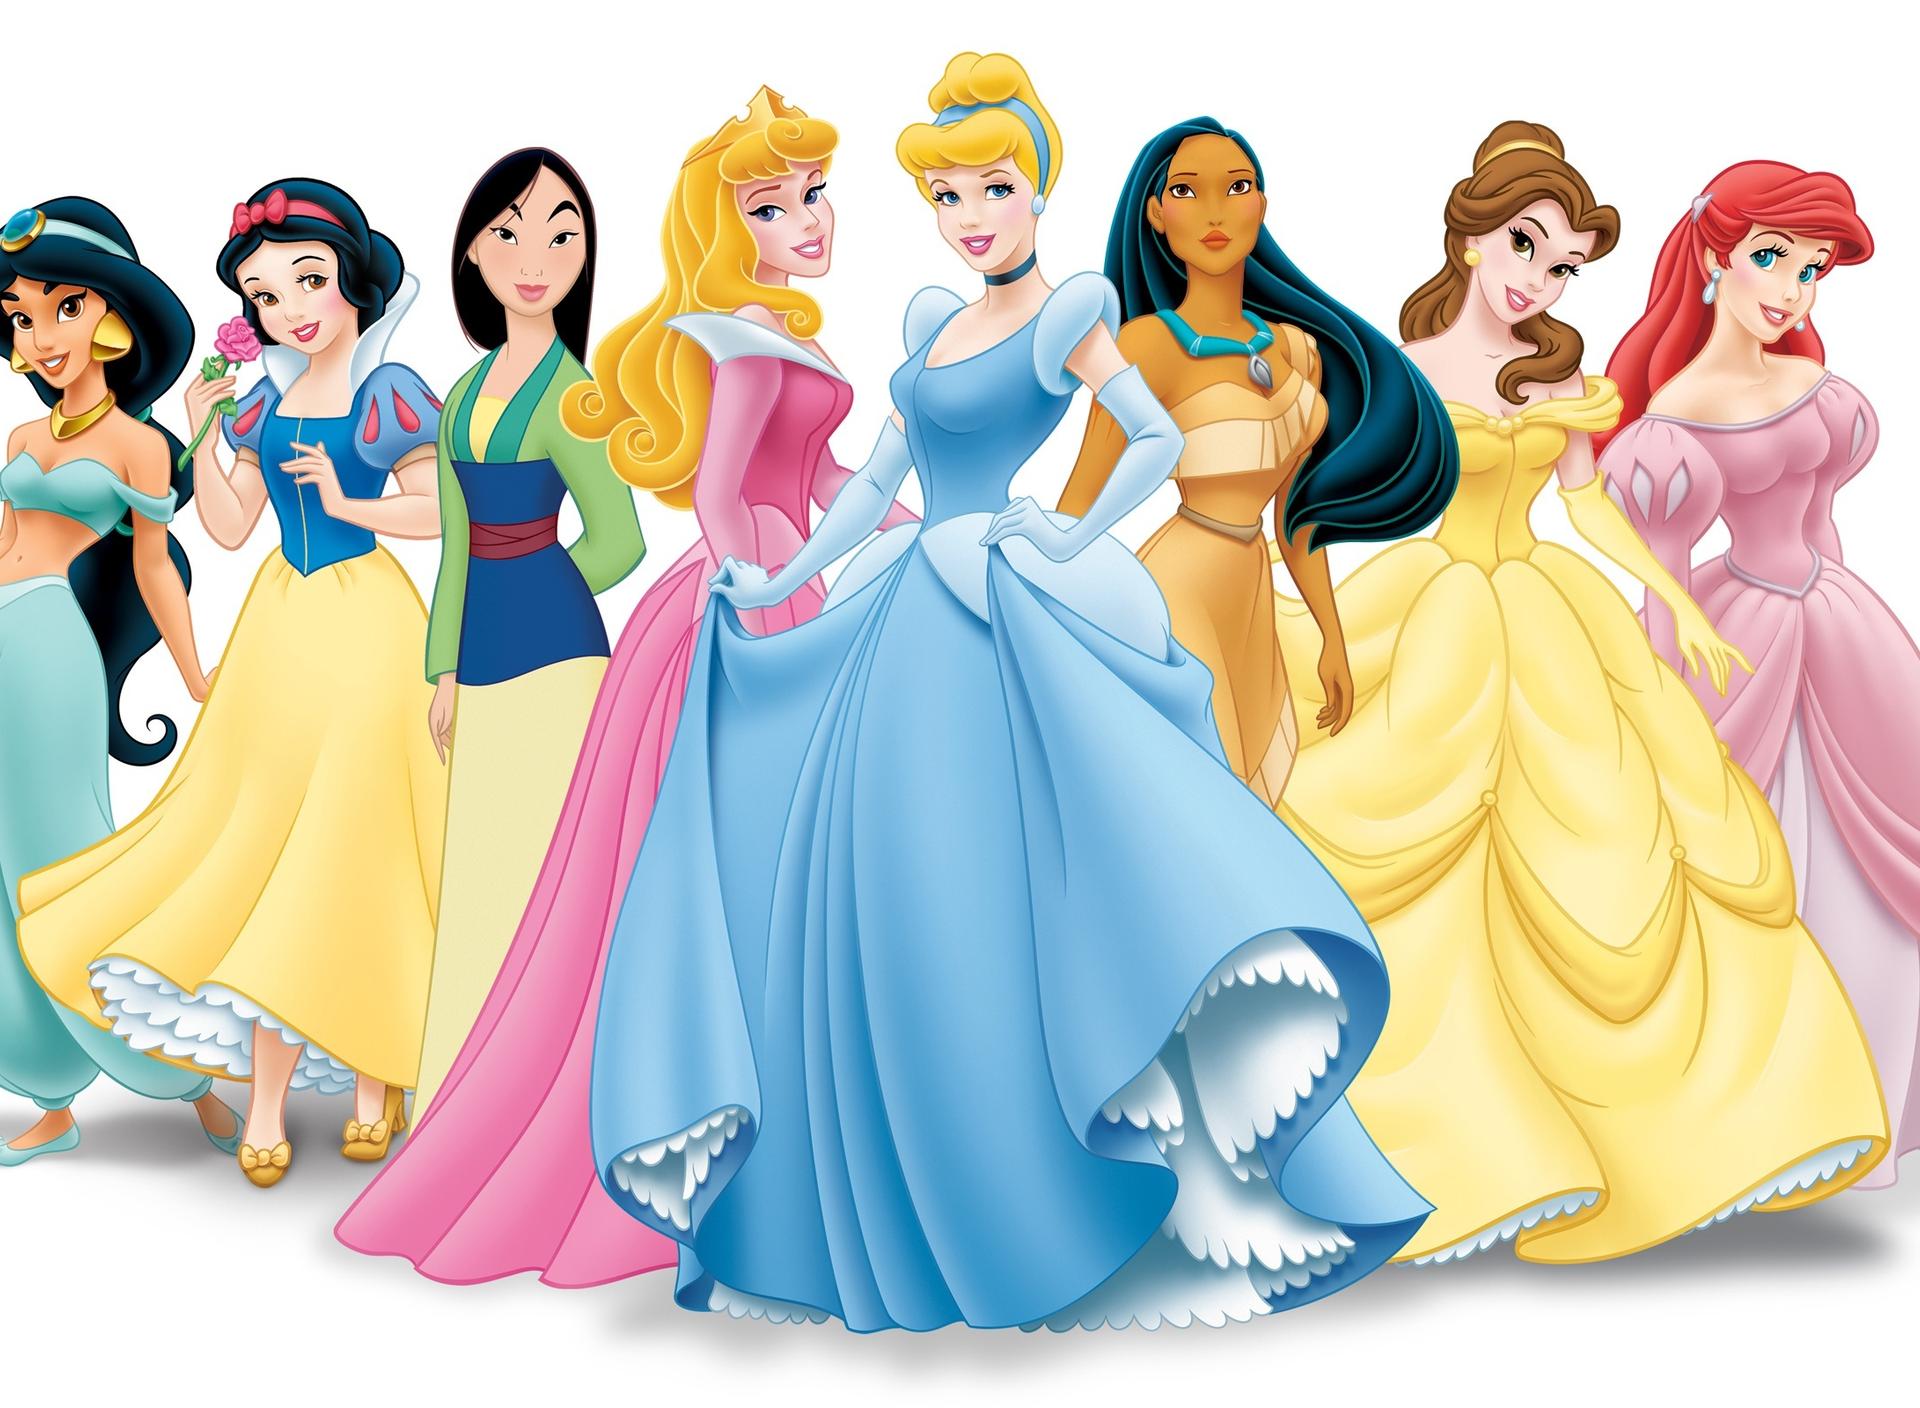 Disney princess - Cartoon characters